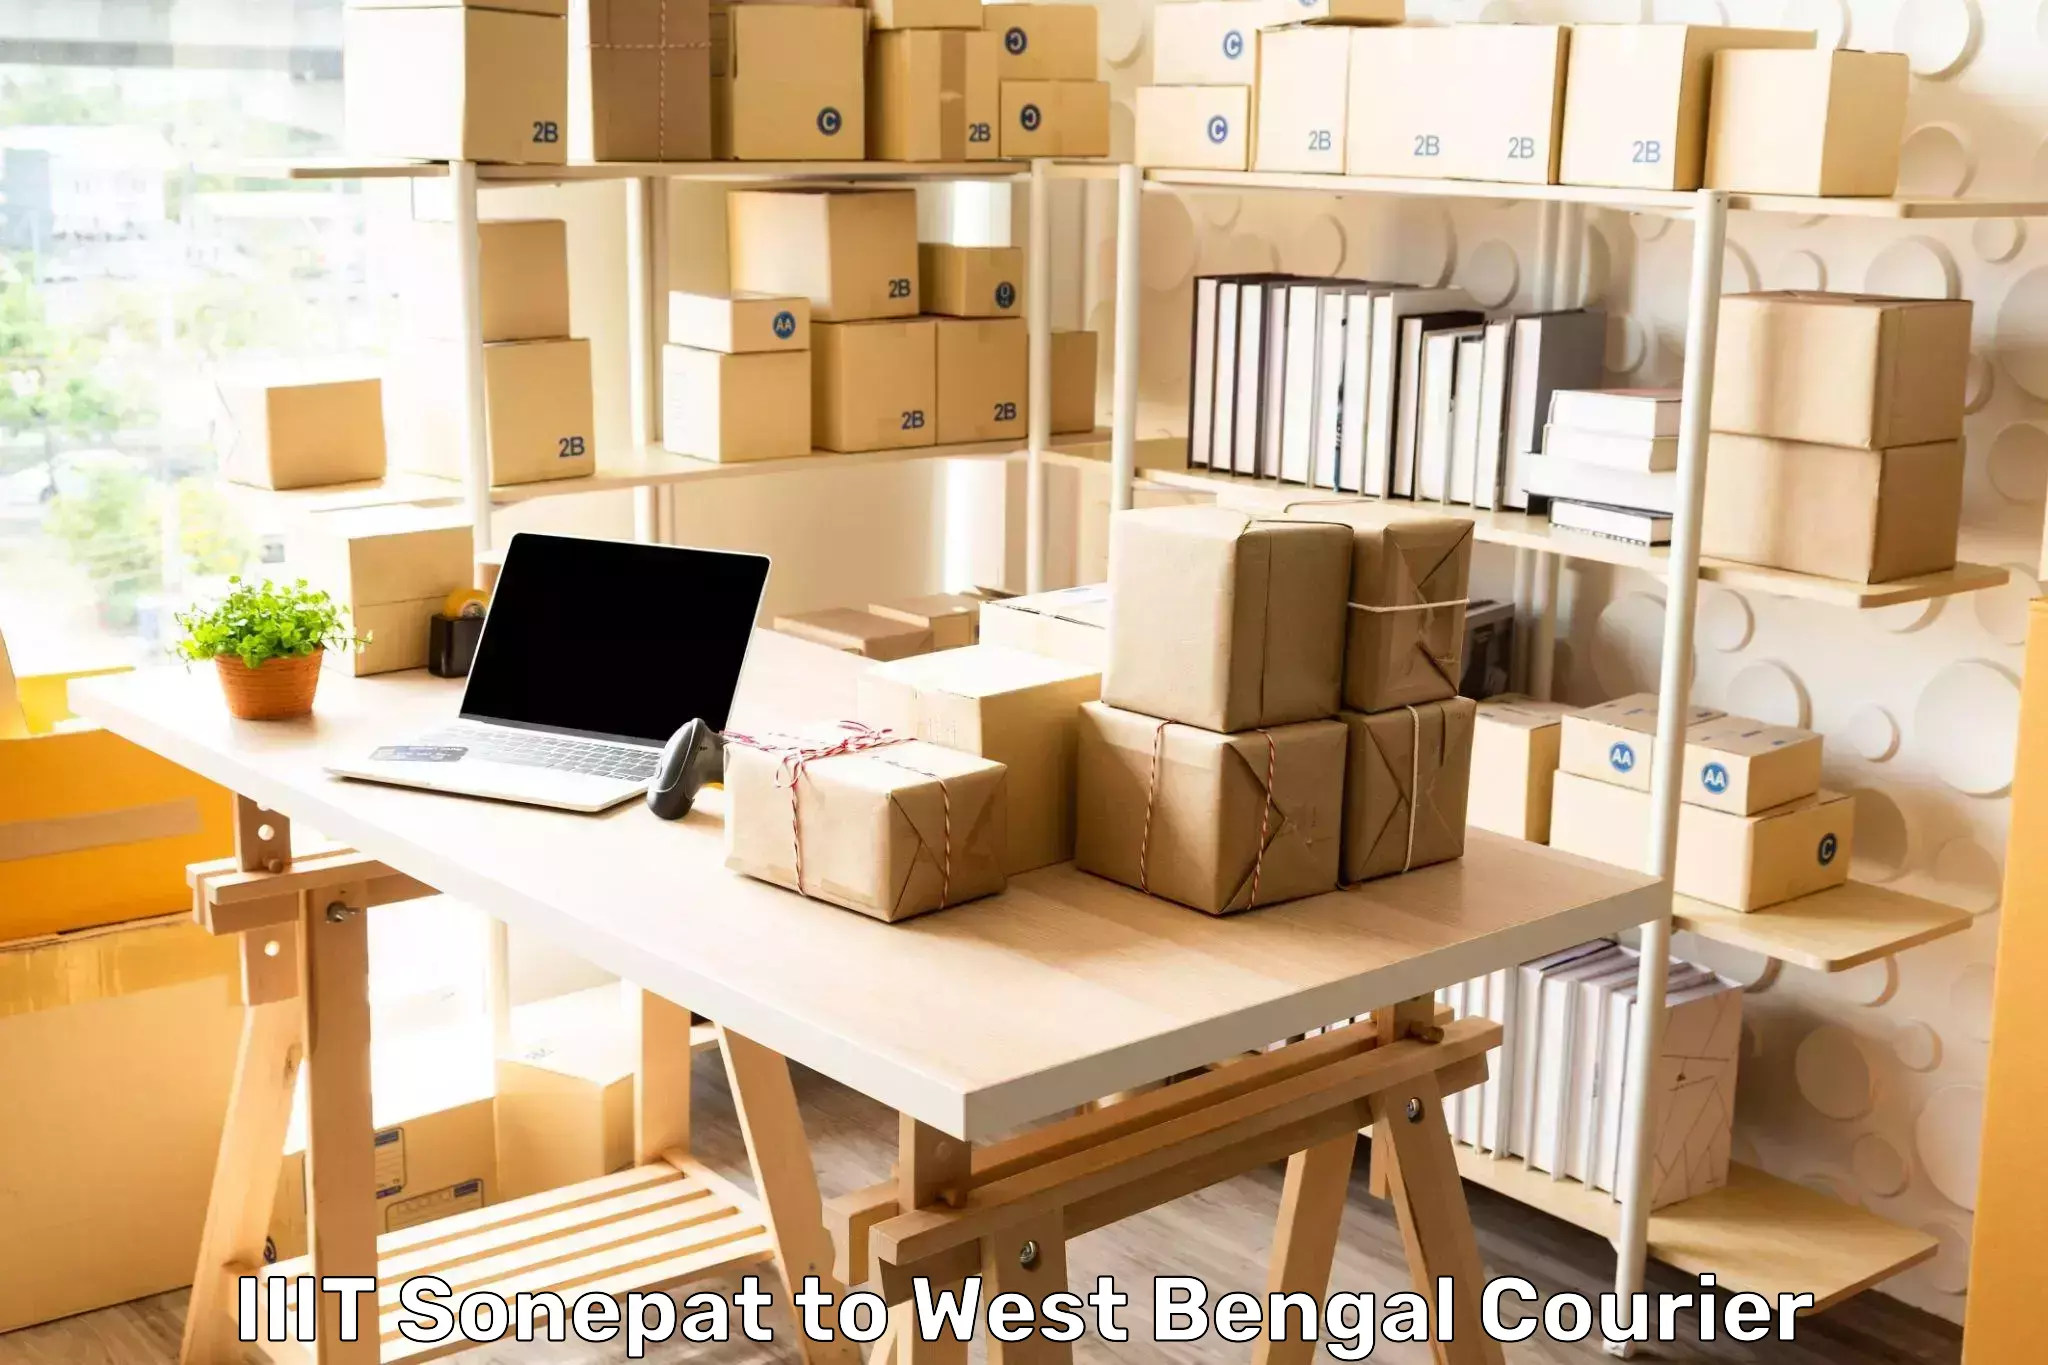 Logistics efficiency in IIIT Sonepat to West Bengal